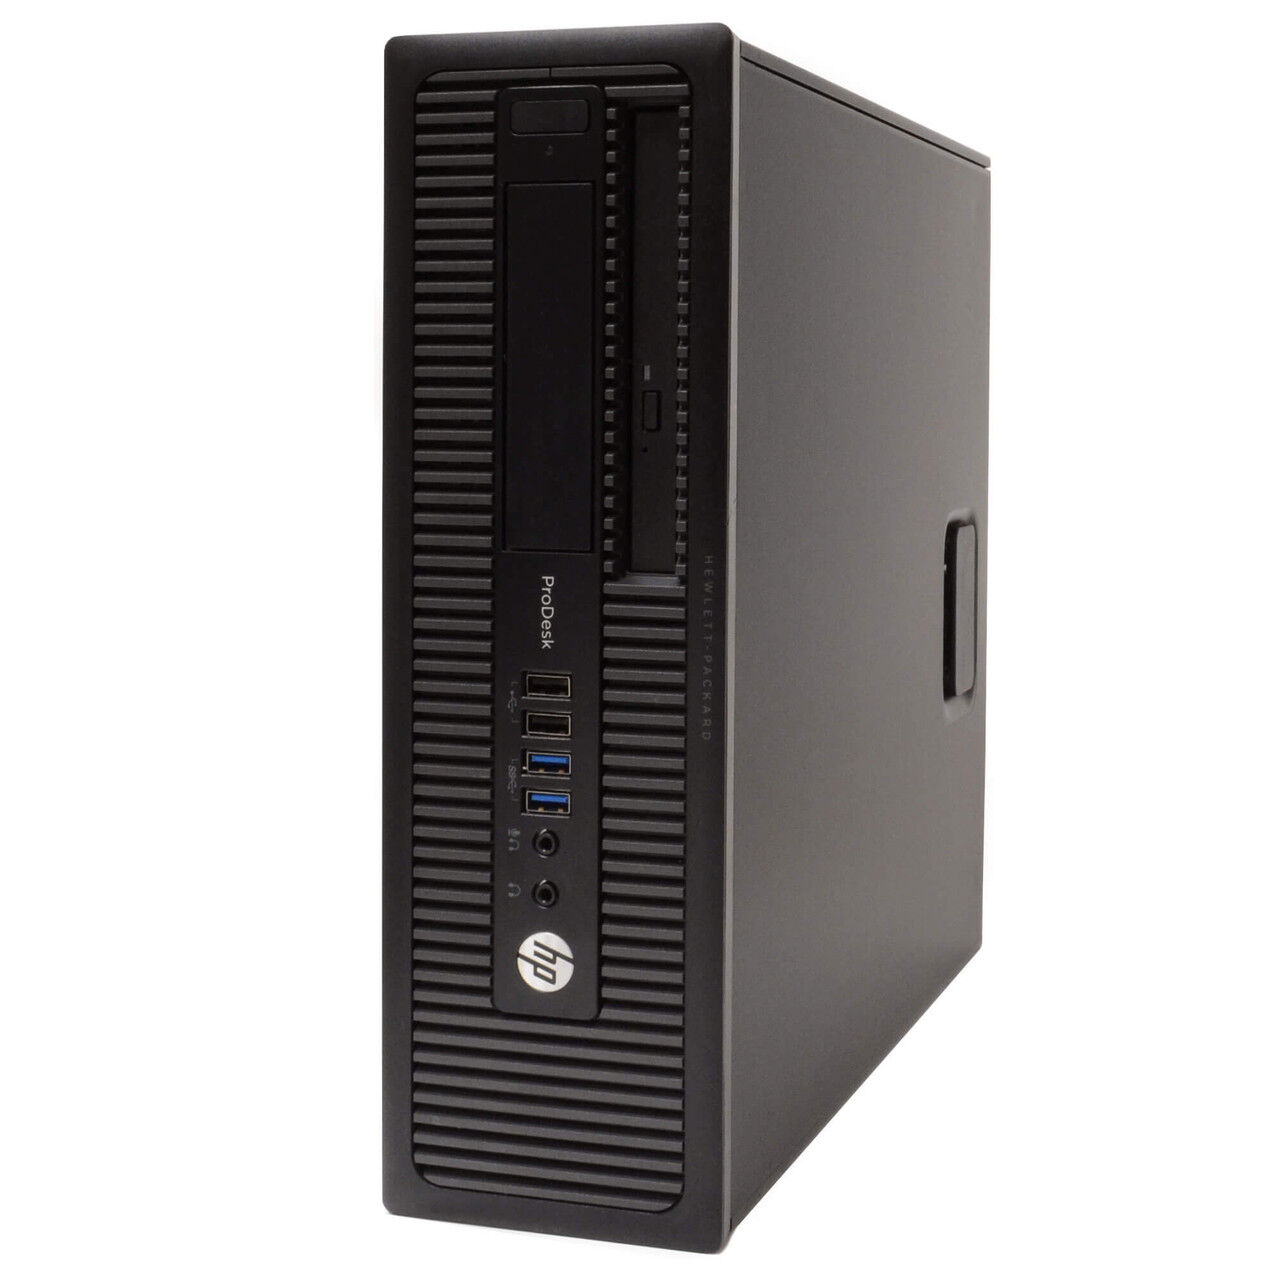 HP ProDesk 600 G1 Desktop Computer: Intel Core i3 (4th Gen), Windows 10, WiFi